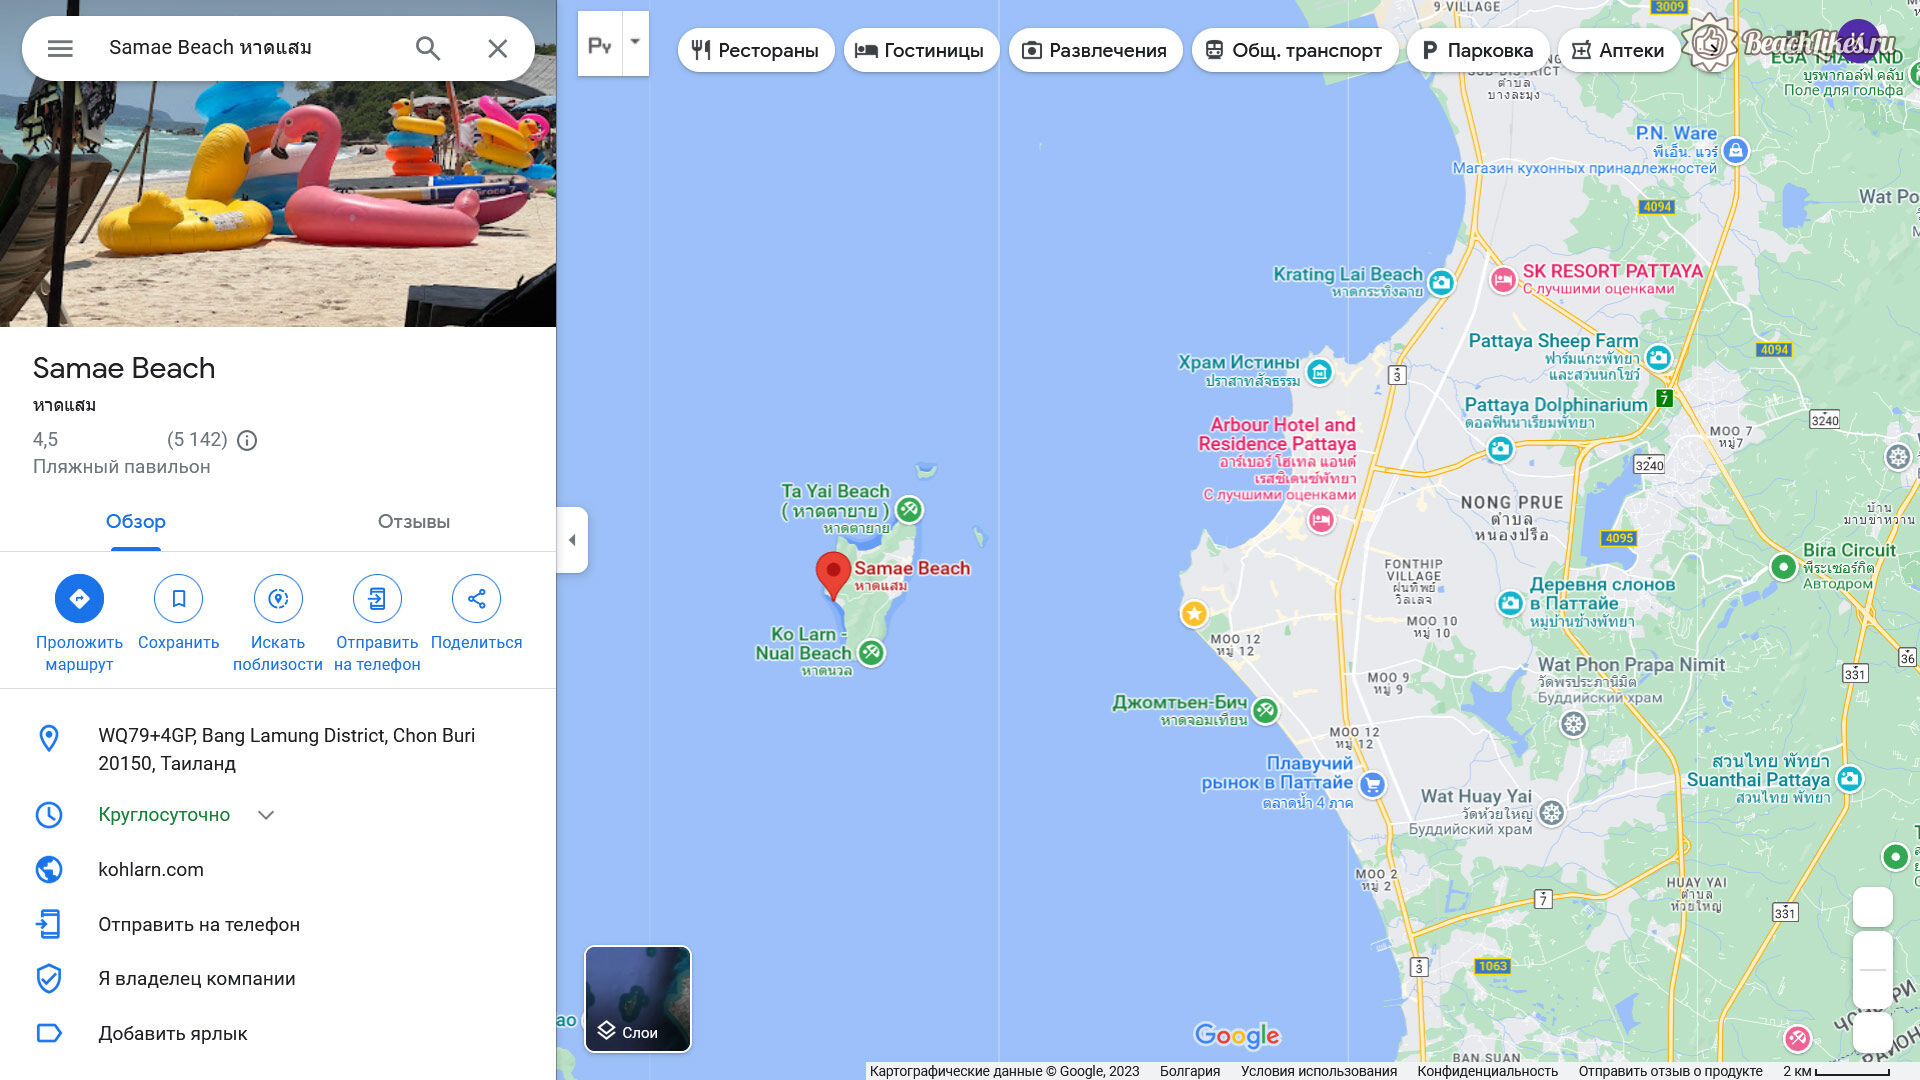 Самае пляж остров Ко Лан в Таиланде где находится и как добраться по карте